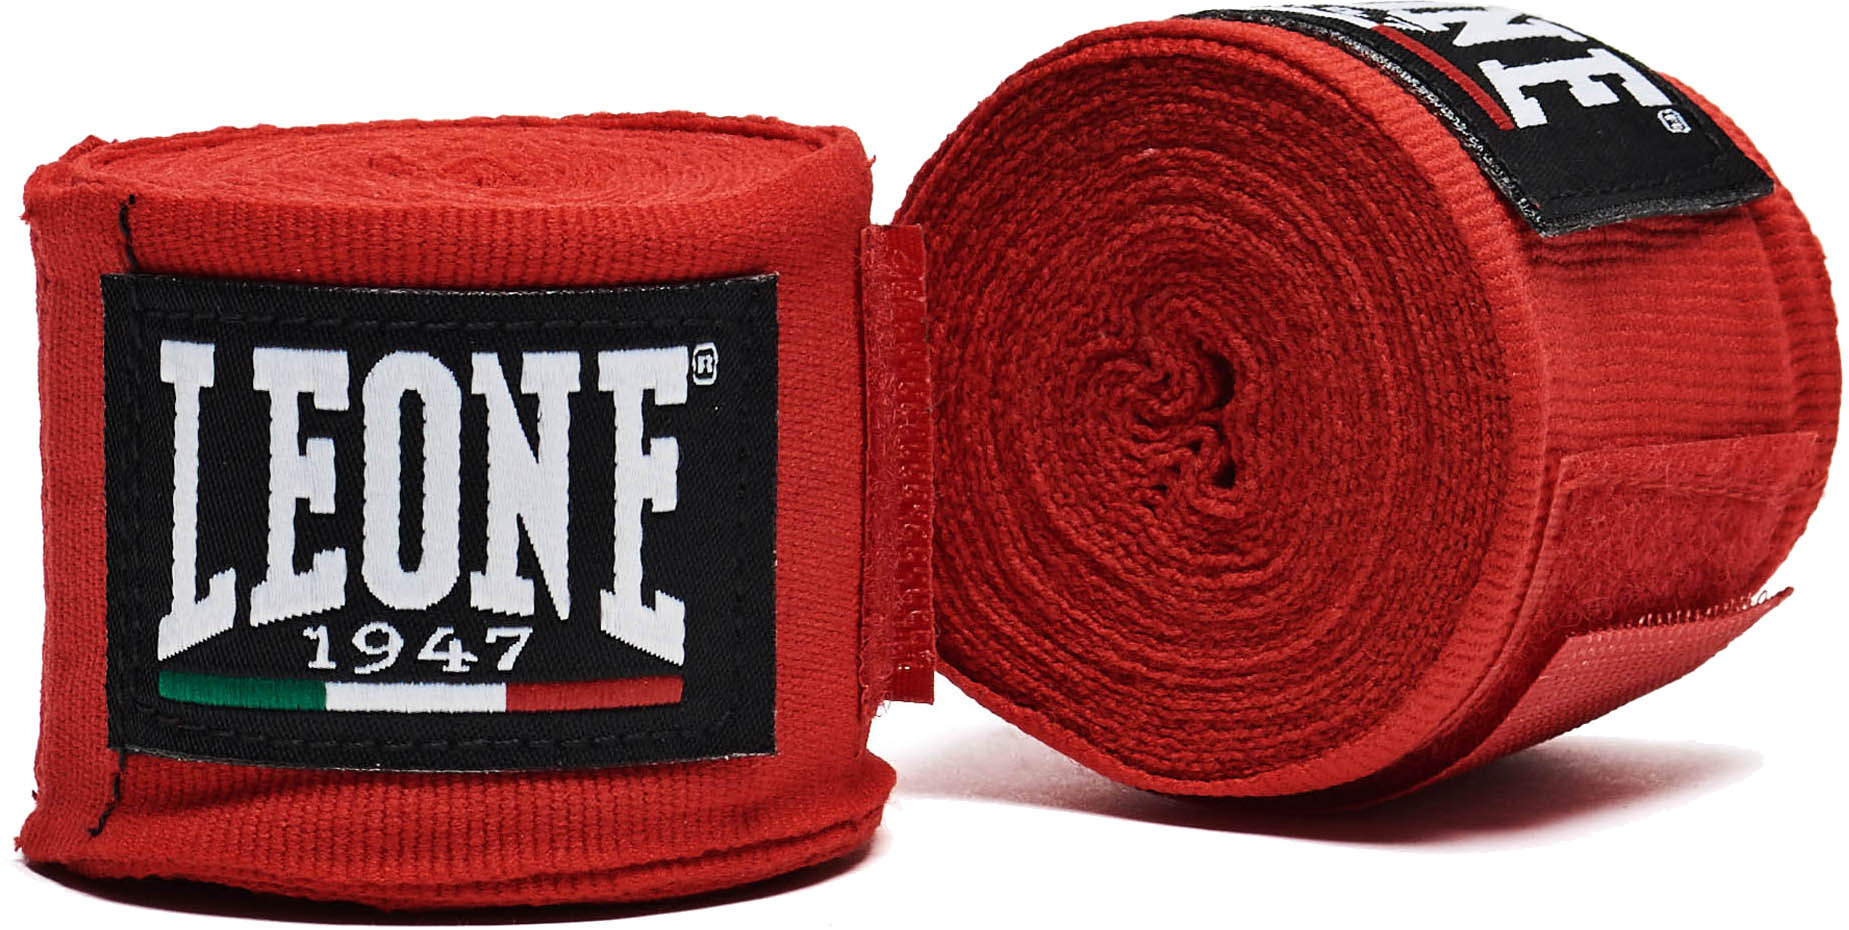 Retrouvez nos Kit bandages Professionnel Boxe Leone 1947 PR300 chez